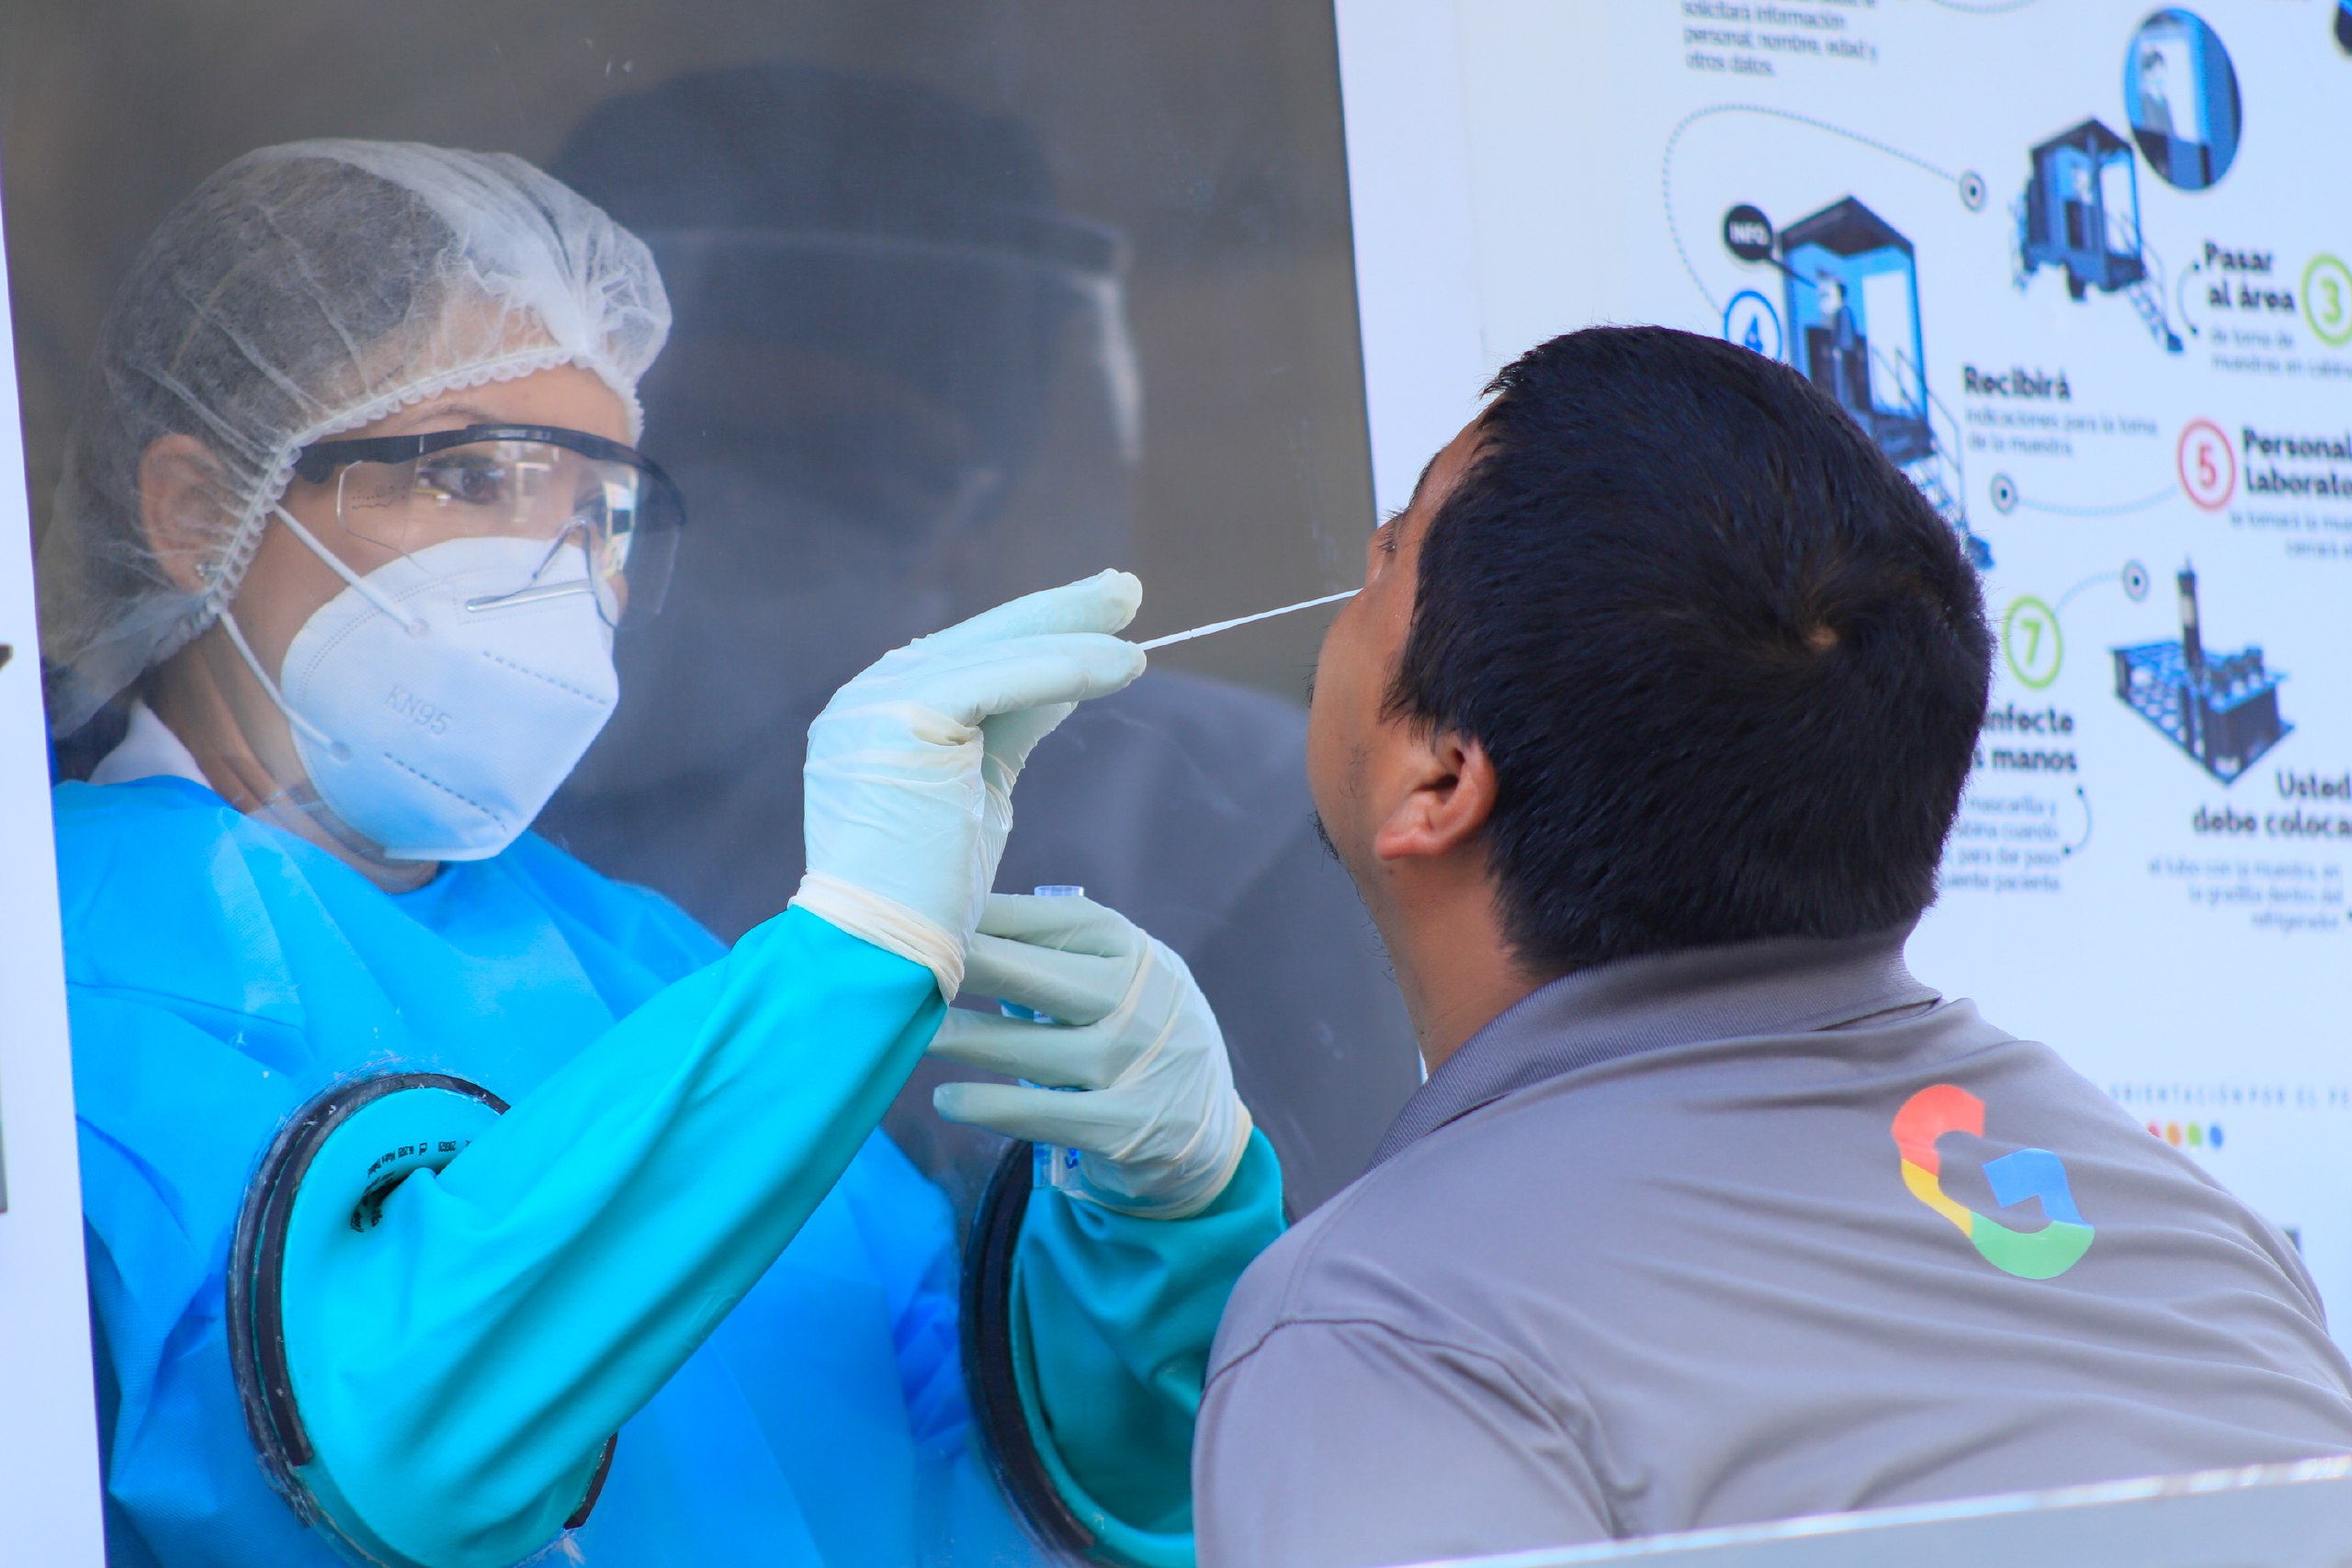 Aumento alarmante de enfermedades respiratorias y alerta por subvariante de COVID19 en El Salvador